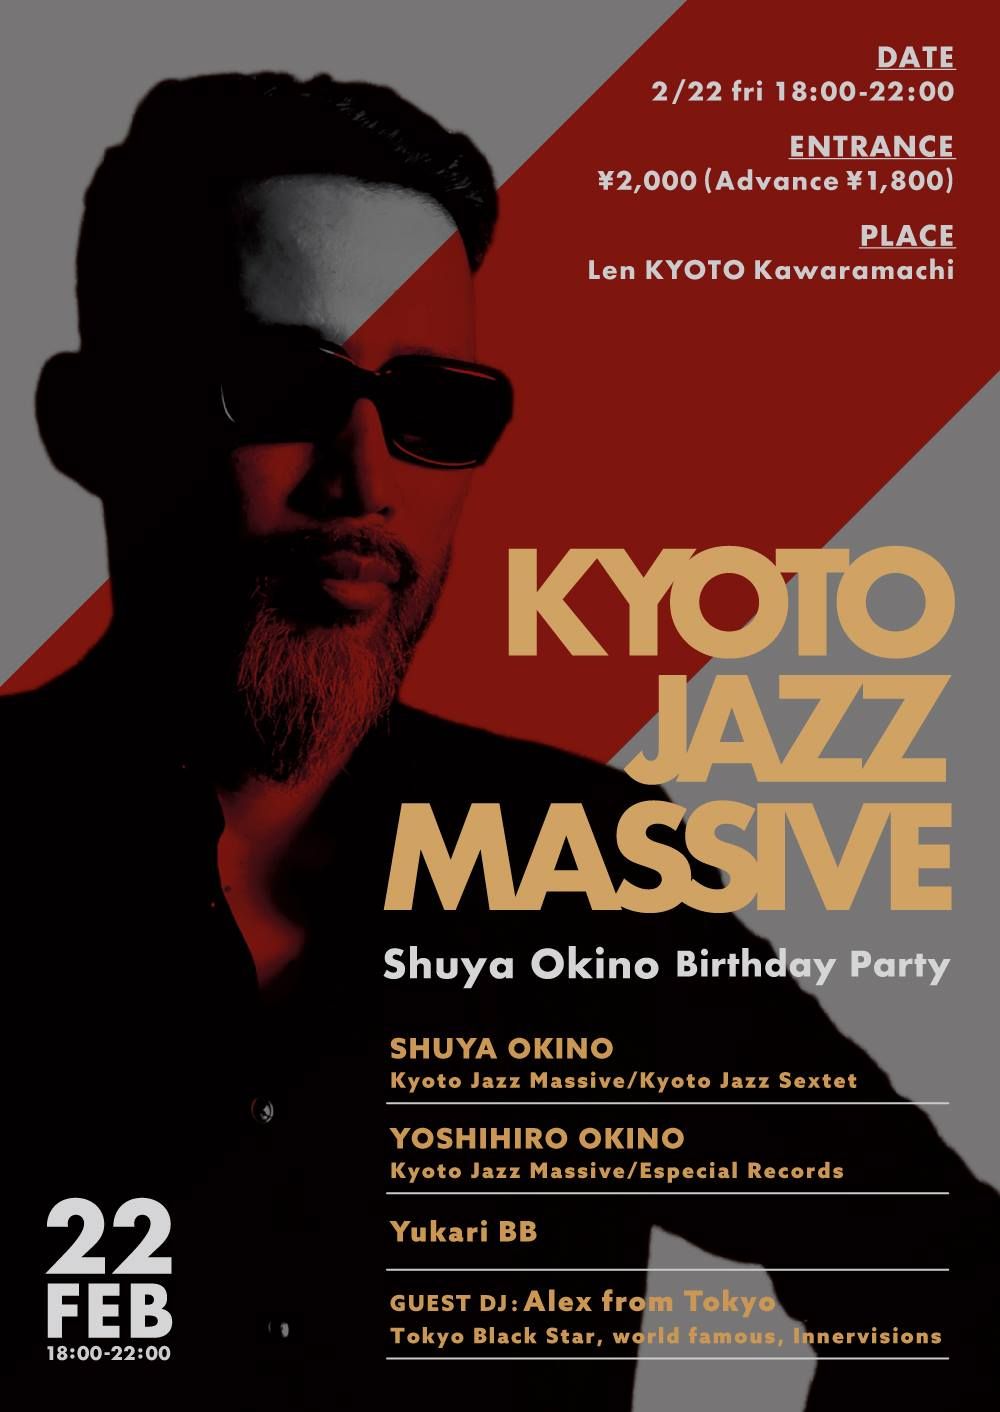 KYOTO JAZZ MASSIVE -Shuya Okino Birthday Party-